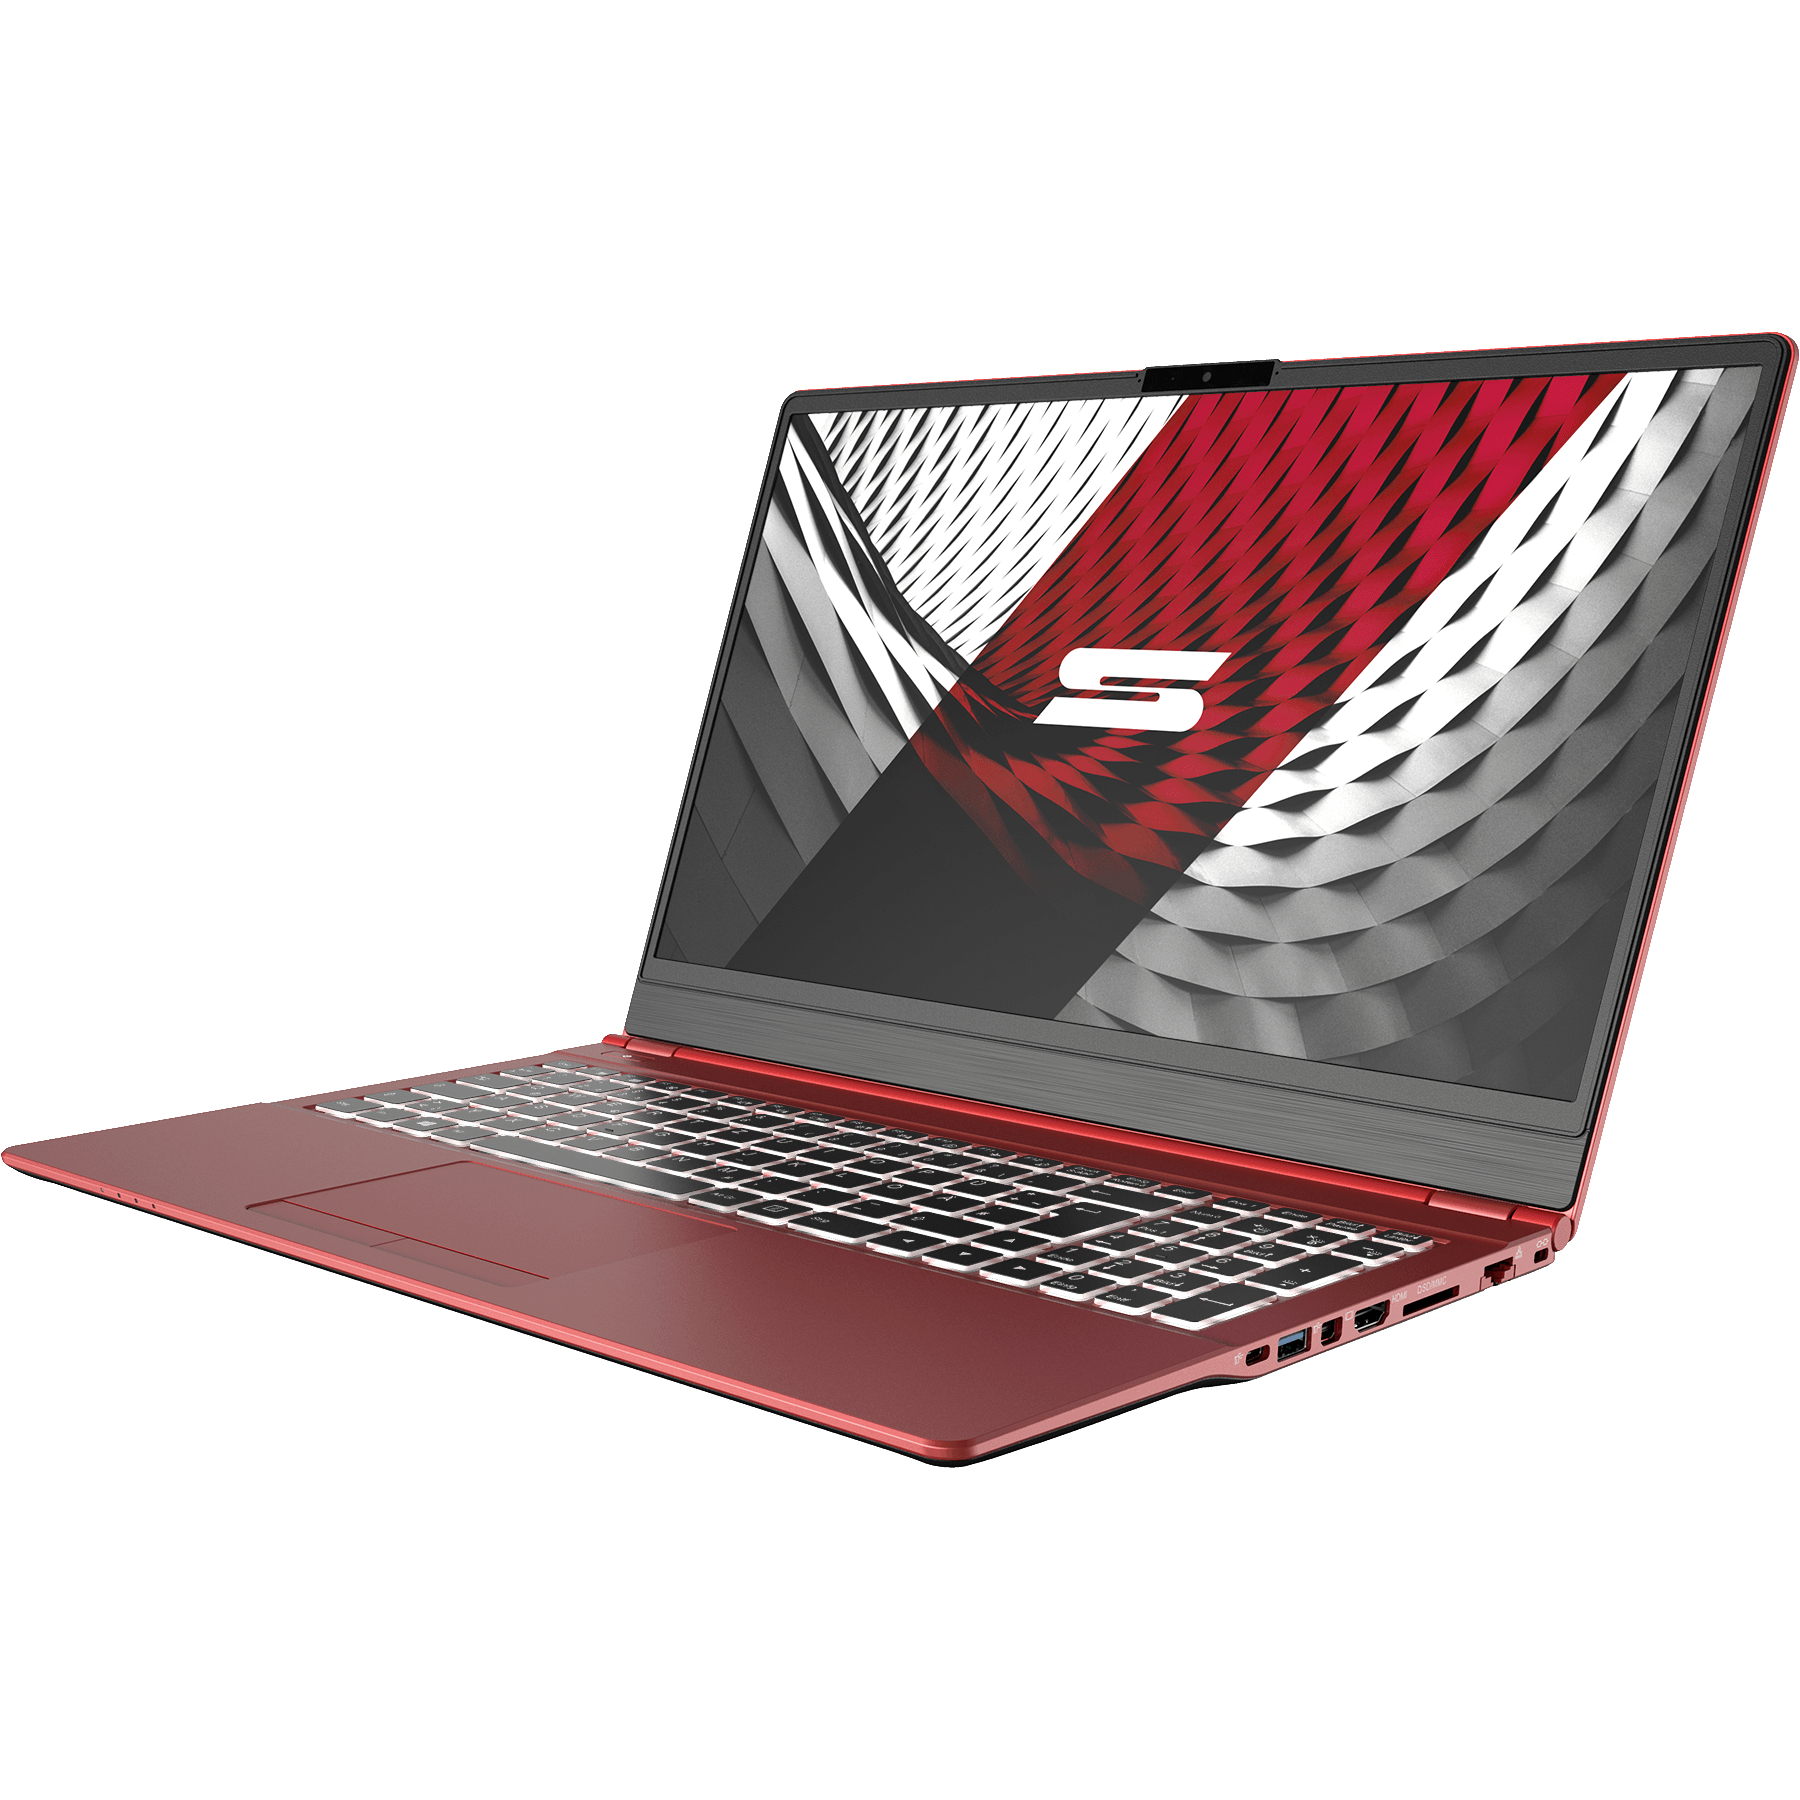 500 RED Intel UHD RAM, GB SCHENKER 15 - SLIM Zoll Intel® Grafik, Notebook 15,6 i5 Prozessor, mSSD, Display, L19hvf, Core™ mit 16 GB Rot